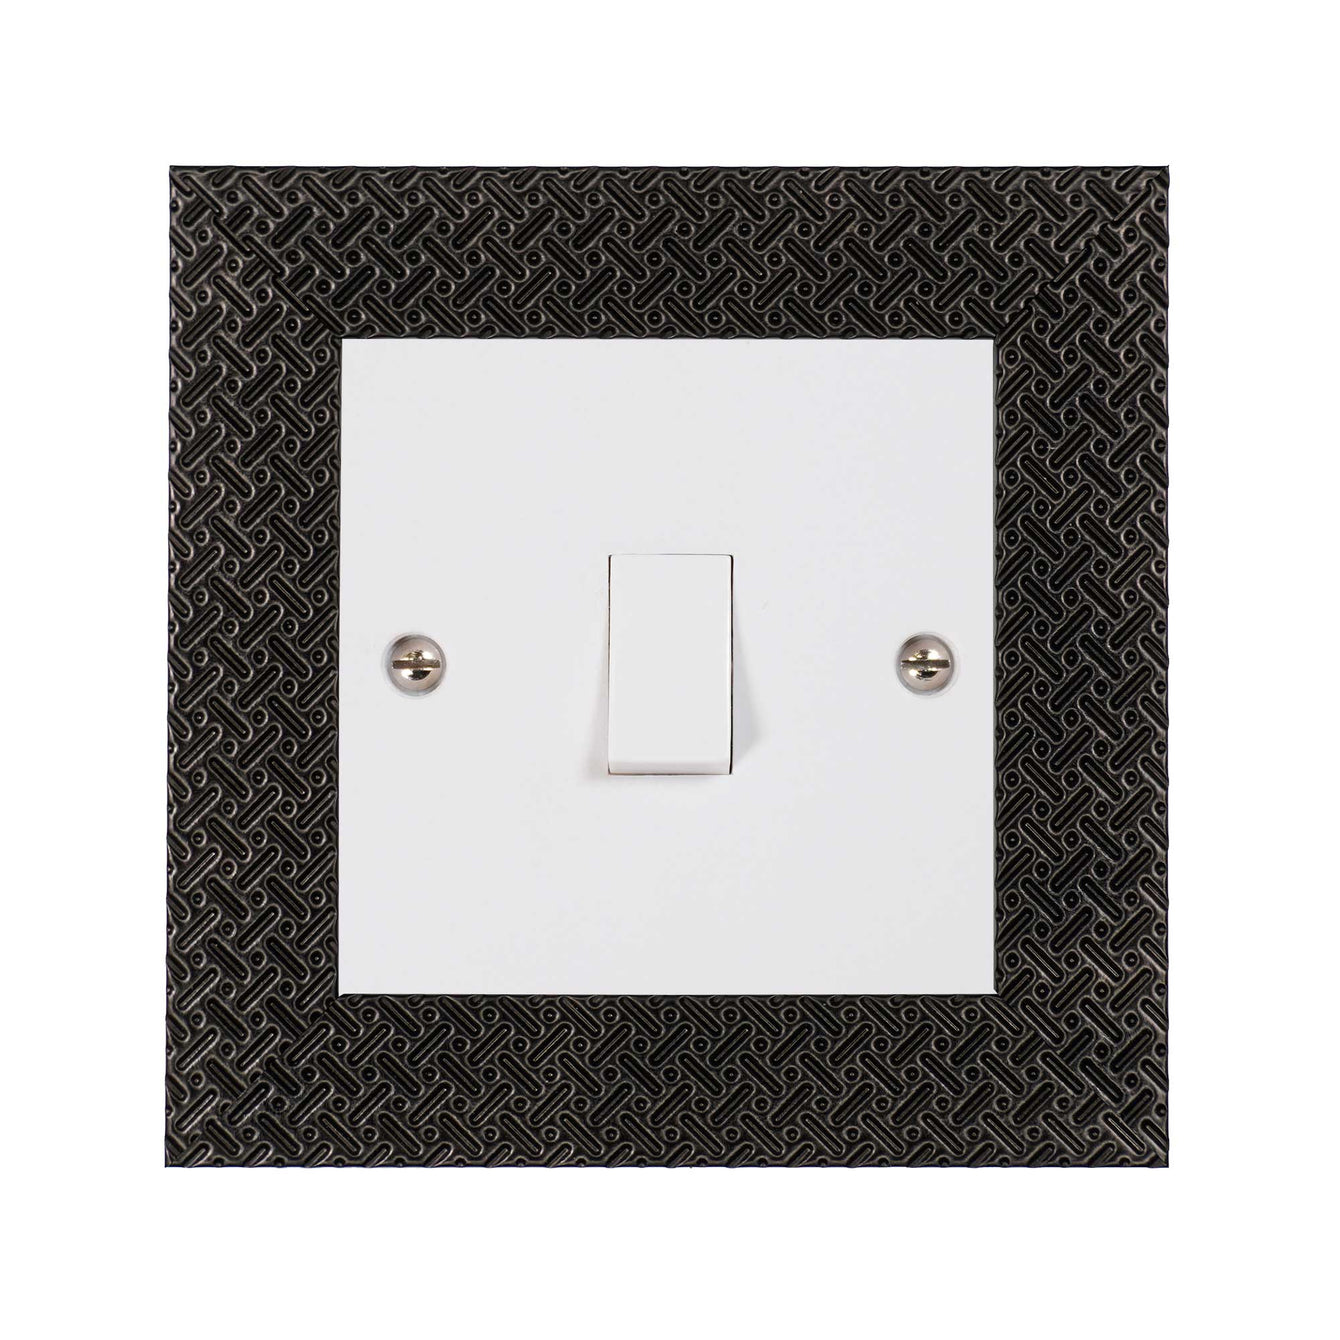 ElekTek Decorative Switch Surround Frame Cover Finger Plate Patterns 